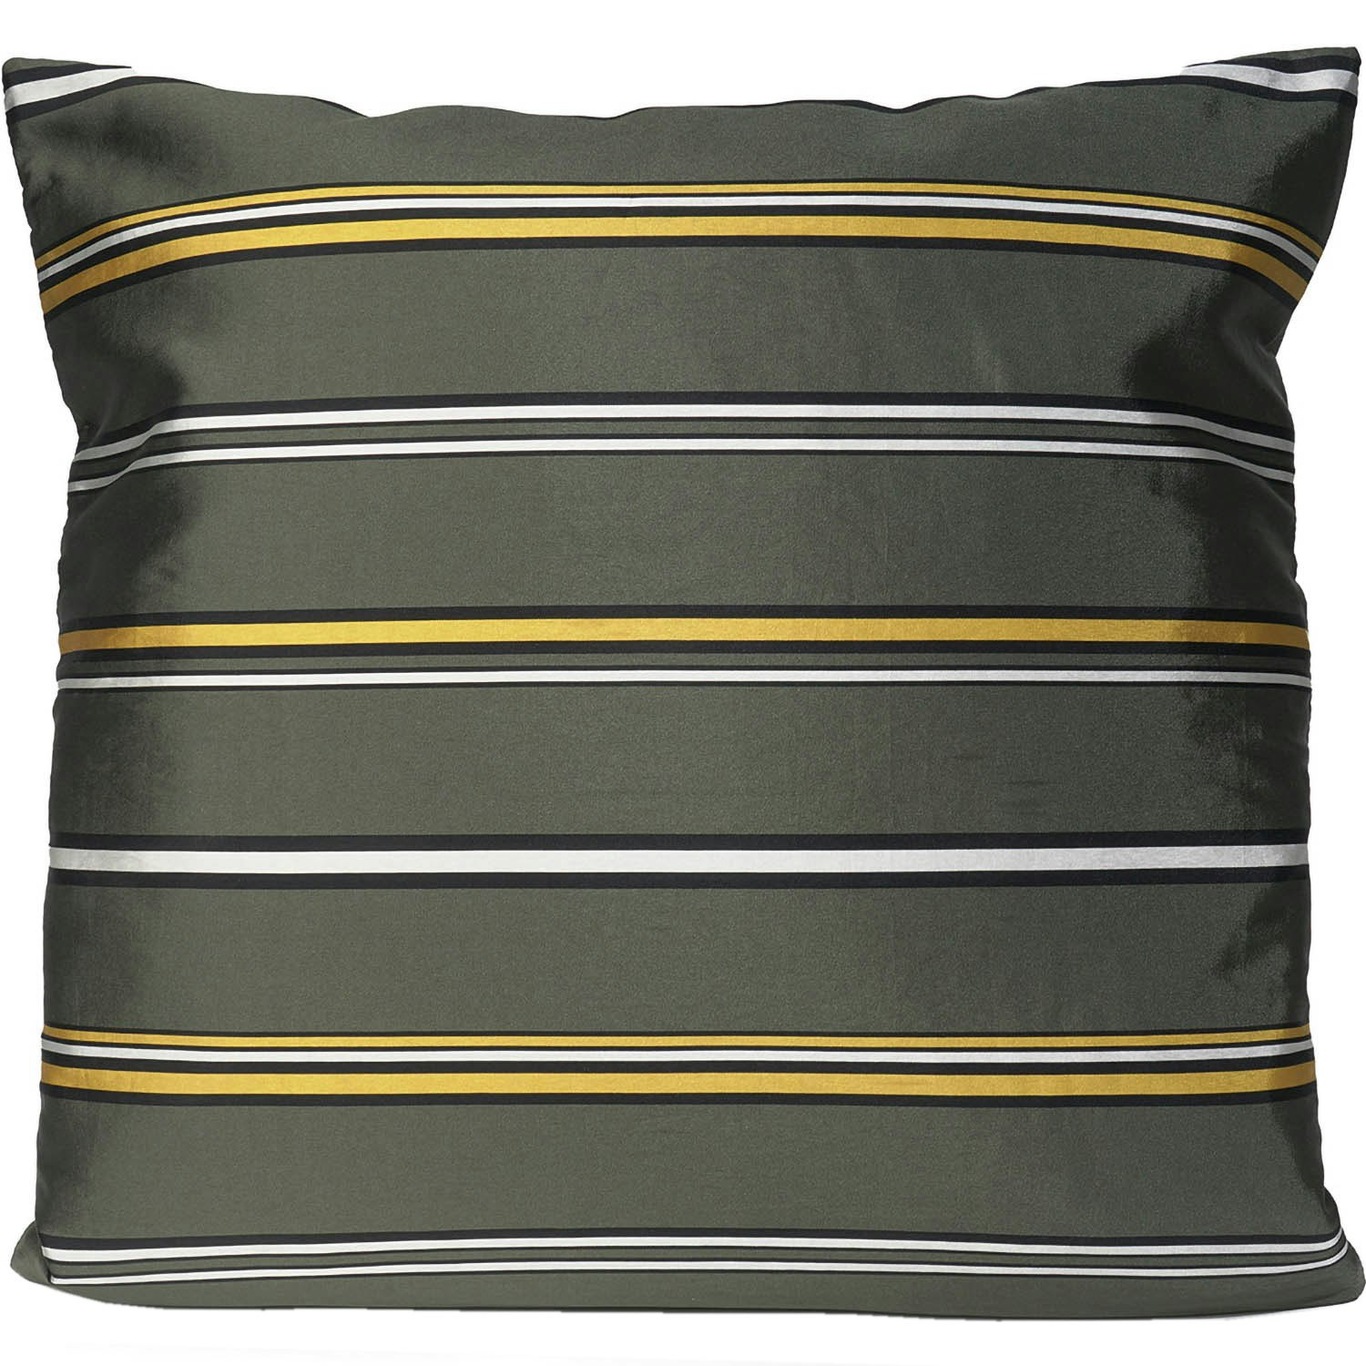 Artist Stripe Cushion Cover 50x50 cm, Green